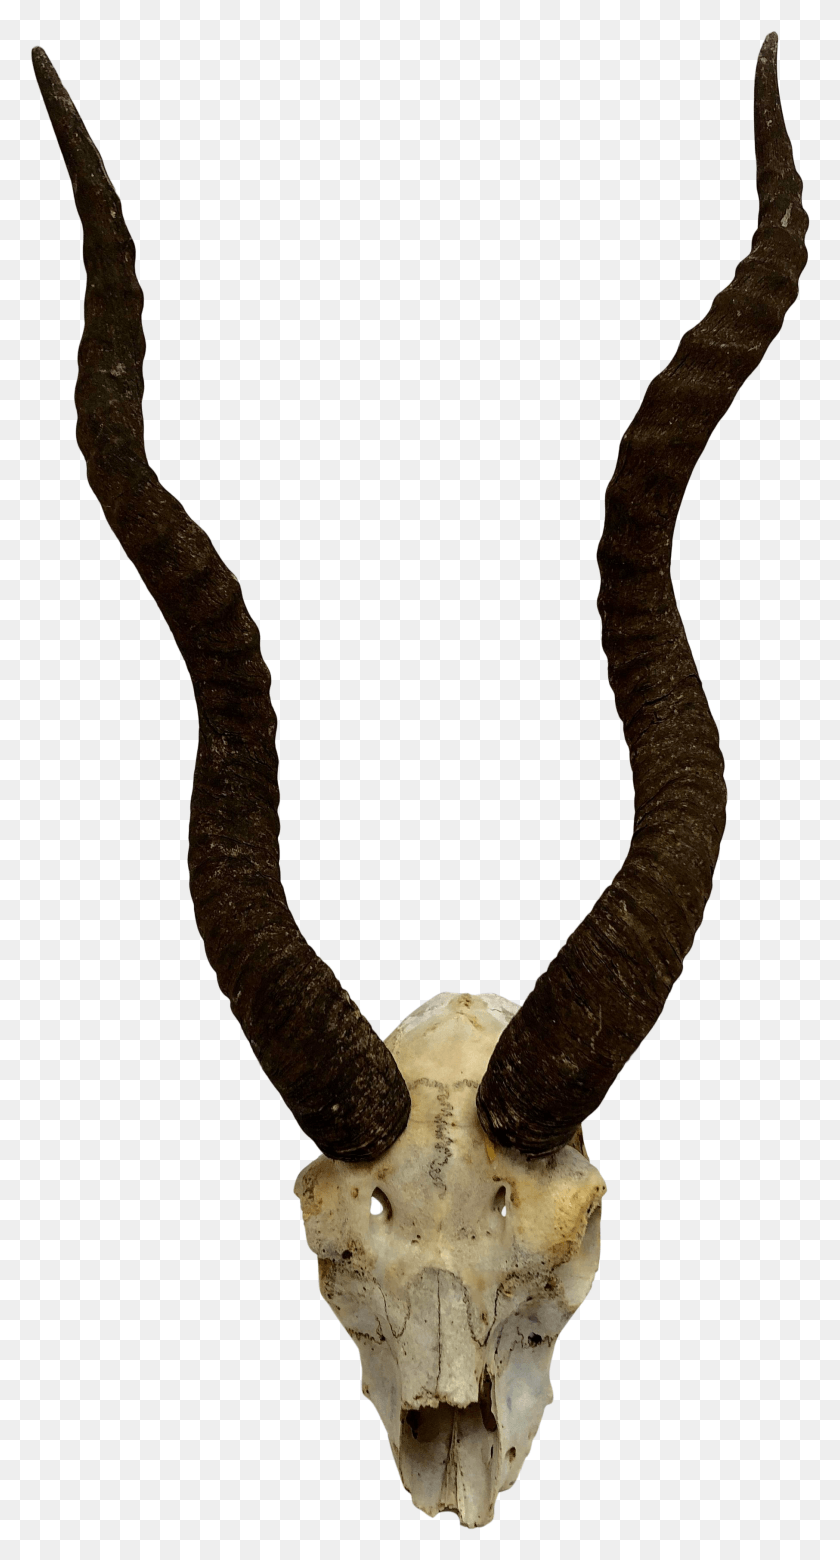 1812x3486 Descargar Png / Astas De Antílope Naturales De Los Años 50 Con Cráneo Parcial Cráneo, Serpiente, Reptil, Animal Hd Png